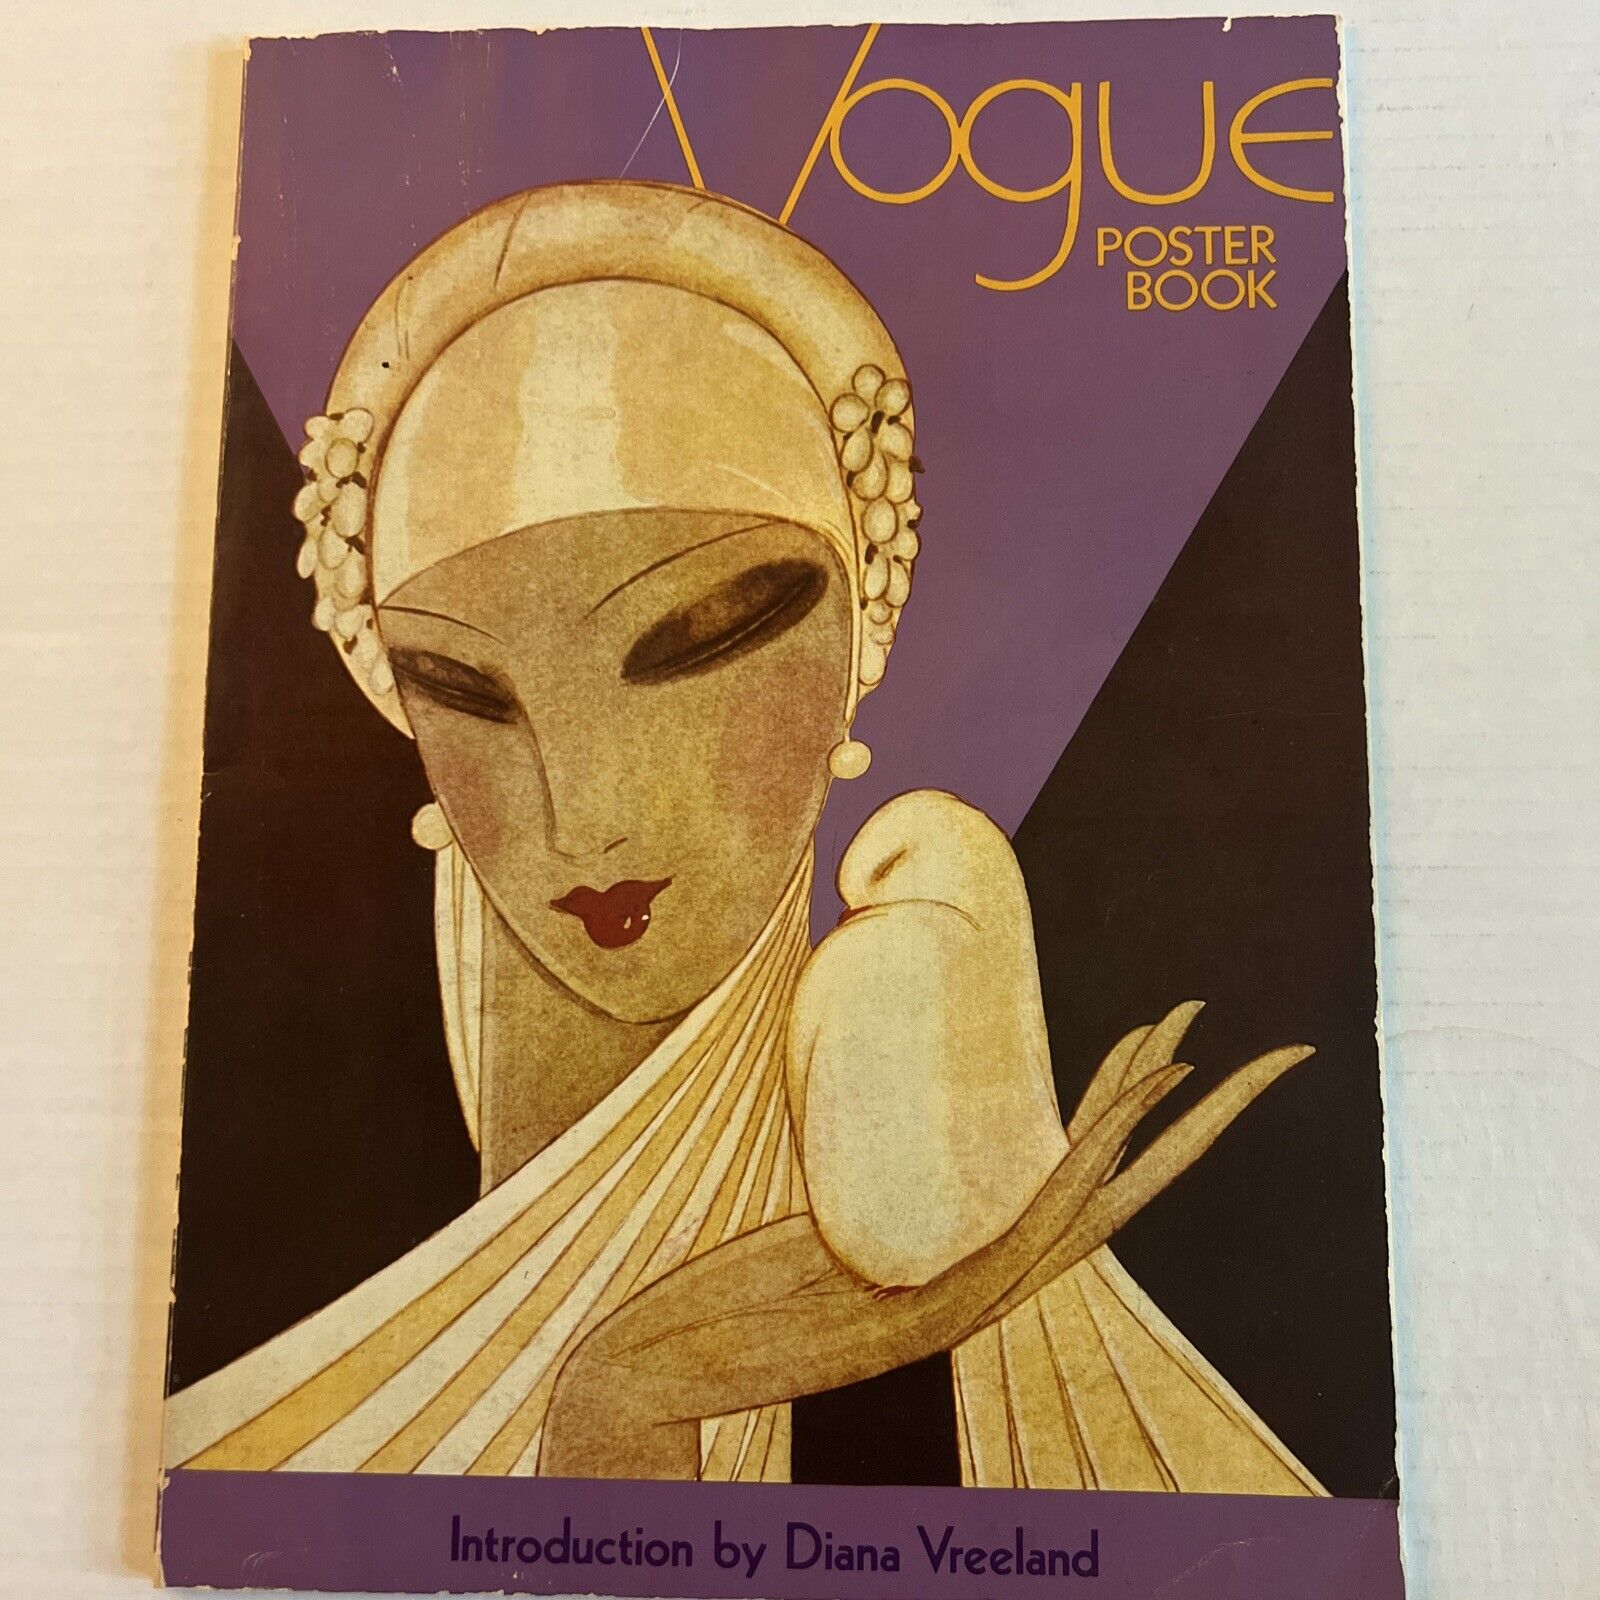 VTG 1975 VOGUE Poster Book Intro by Diana Vreeland -Odor & Smoke & Pet Free